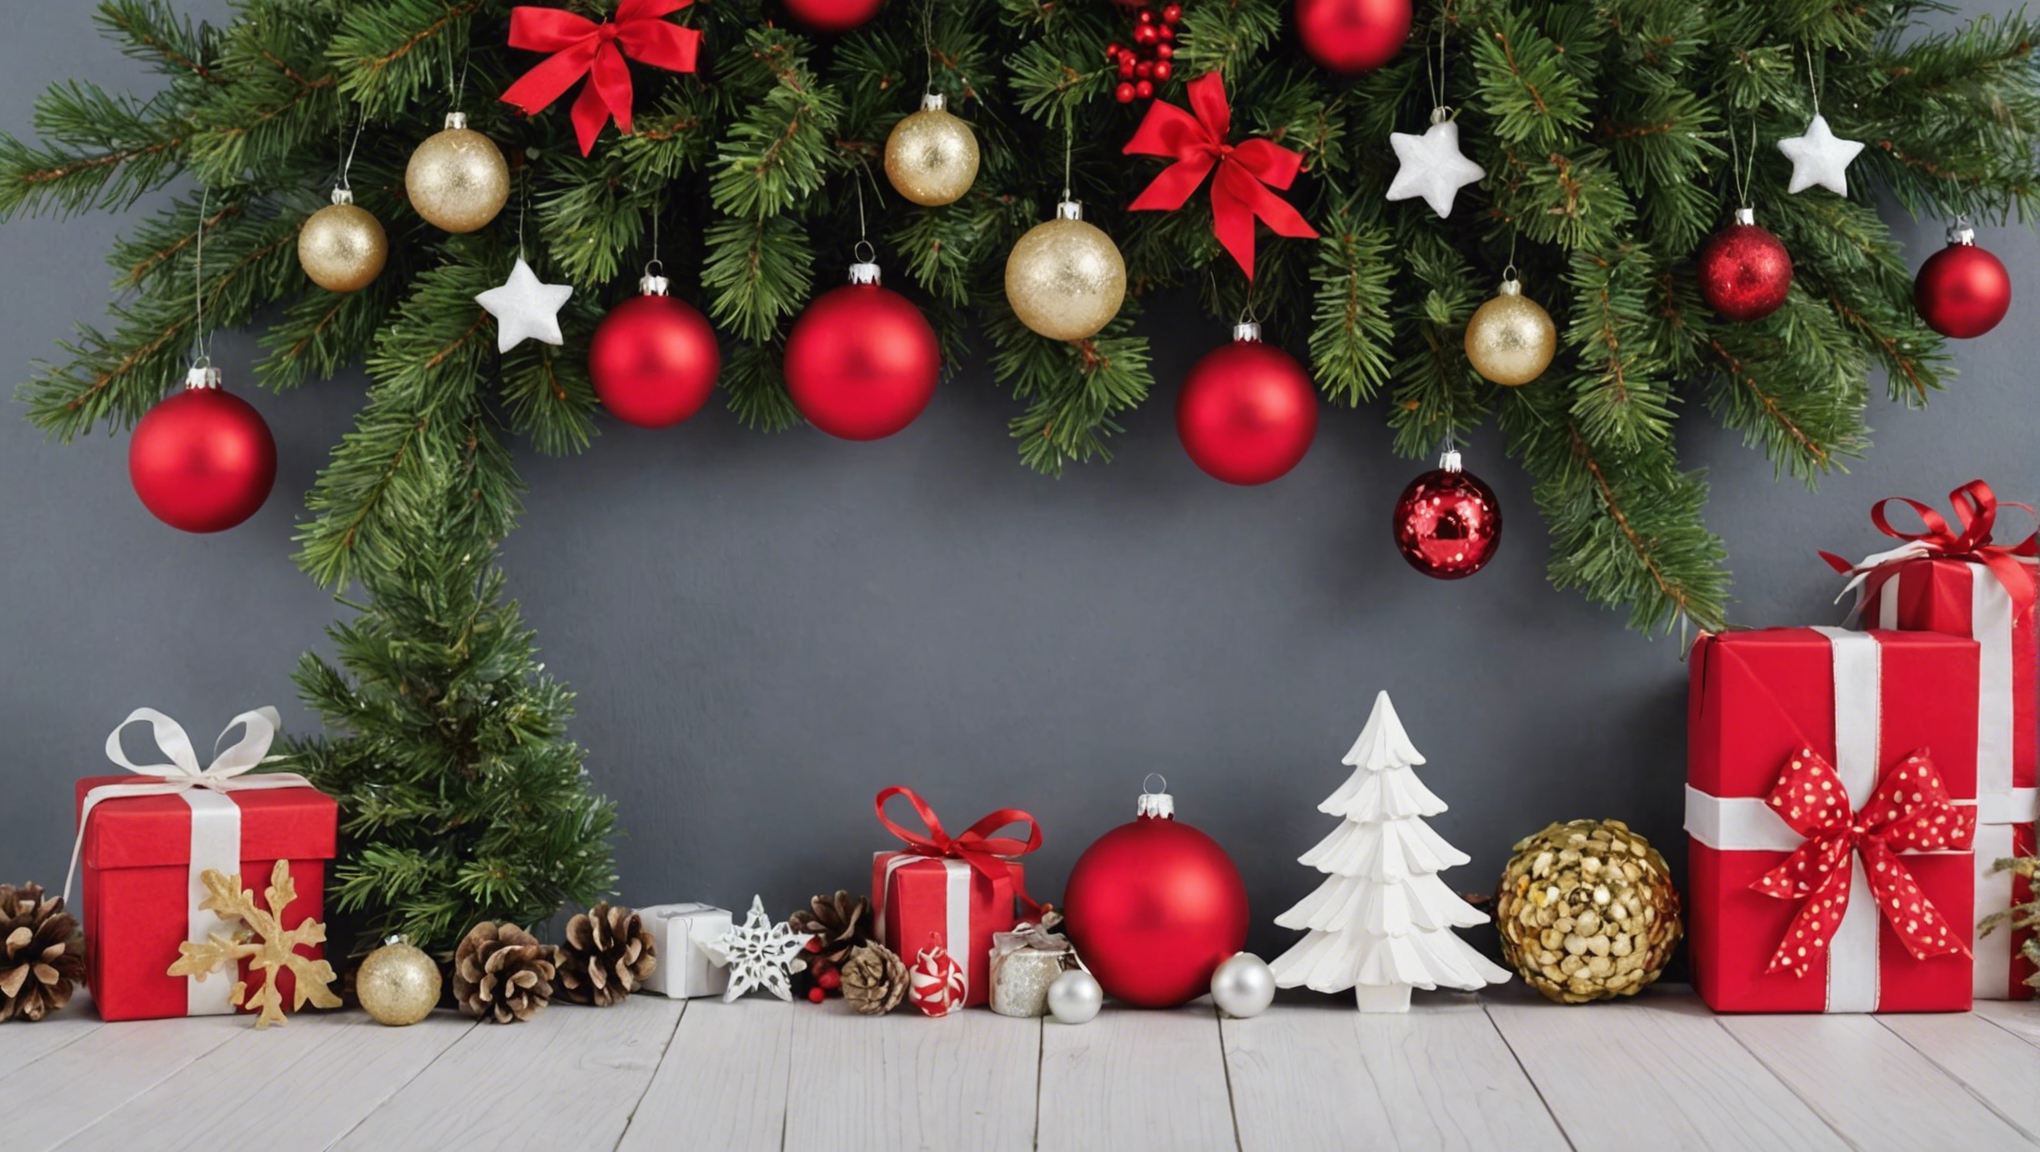 découvrez nos astuces et conseils pour réussir une décoration de noël faite maison et créer une ambiance chaleureuse et festive chez vous.